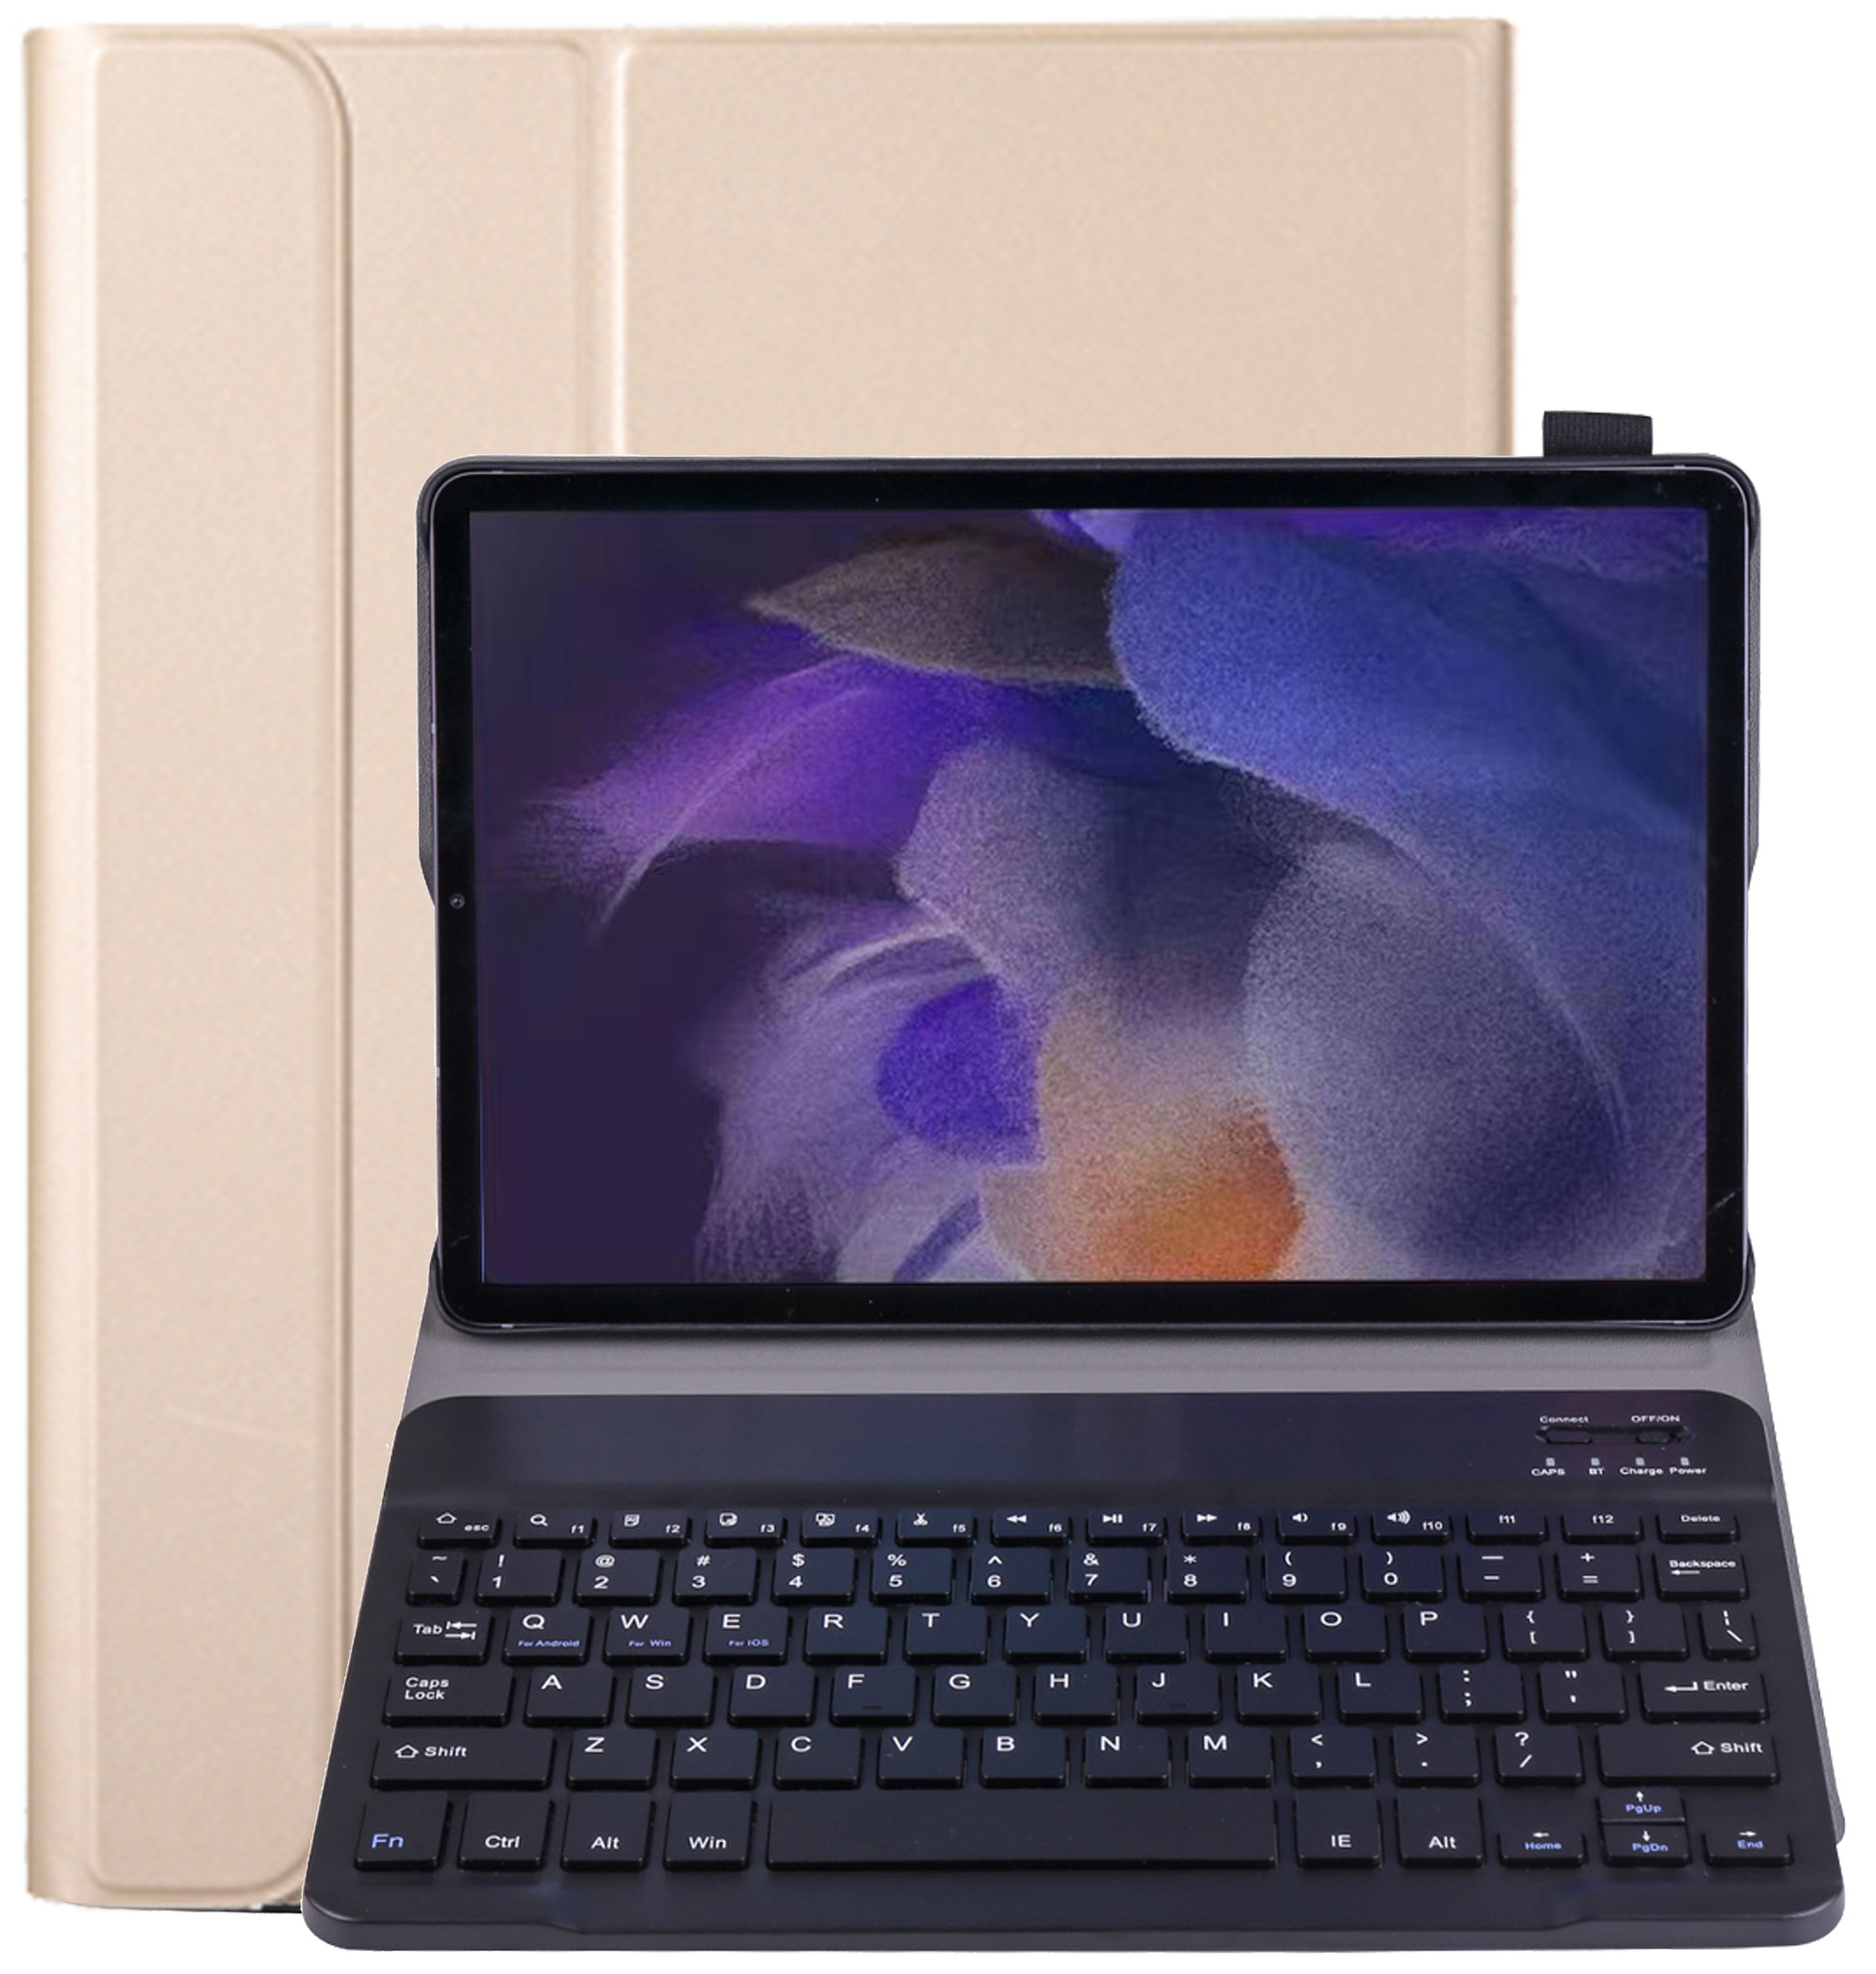 NoXx Samsung Galaxy Tab A8 2021 Toetsenbord Hoes Samsung Galaxy Tab A8 2021 Keyboard Case Book Cover - Goud